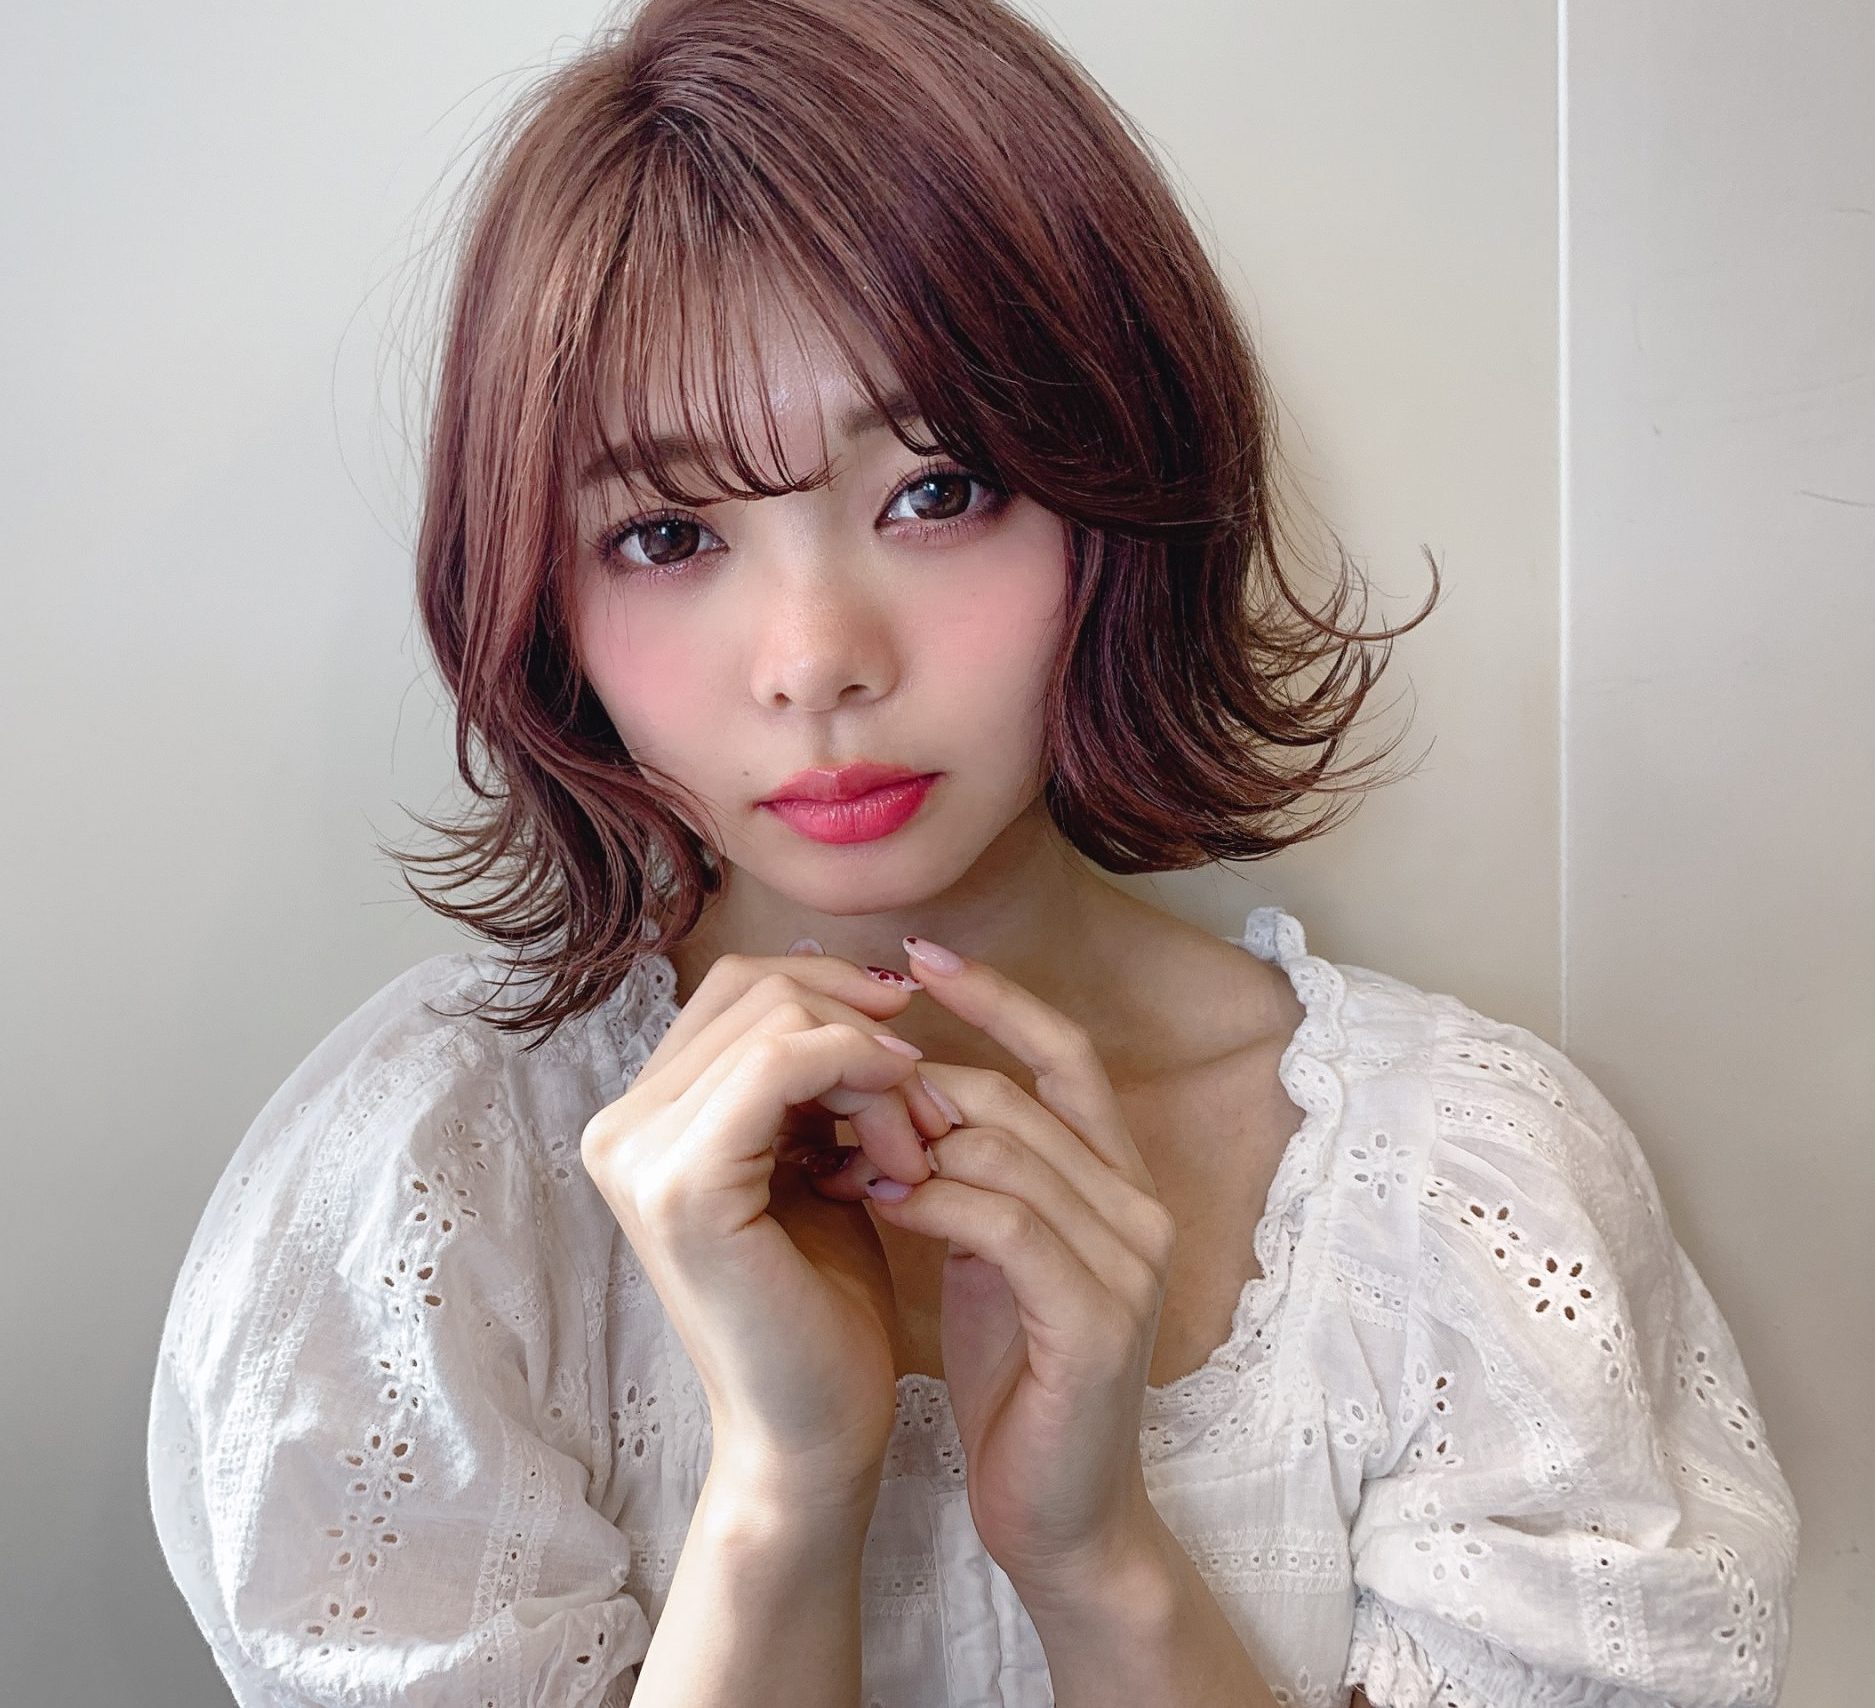 一瞬で垢抜け 韓国ヘア 髪型で韓国美女に変身しましょう 奈良 京都 大阪の美容室 ハピネス